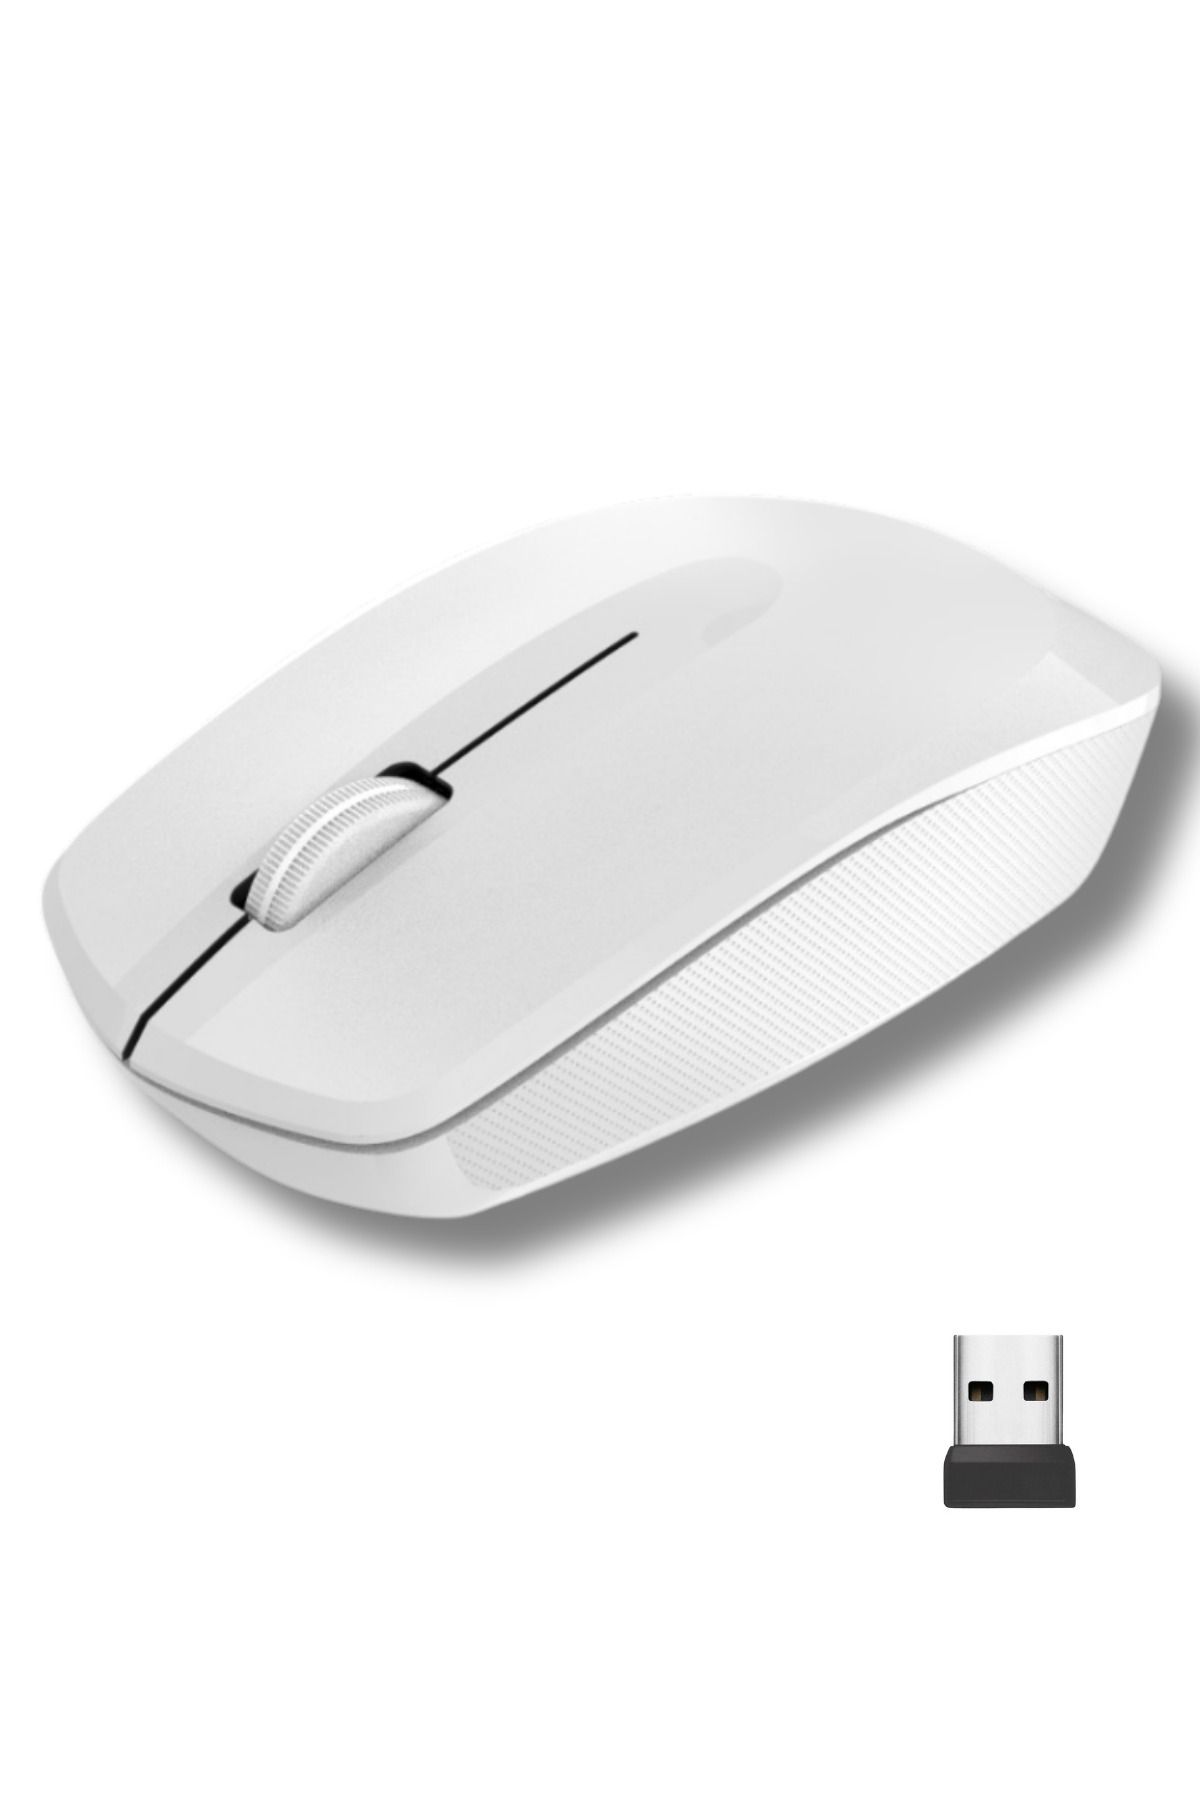 Vetech Kablosuz Mouse Laptop / Notebook Uyumlu / USB Alıcılı - Pilli